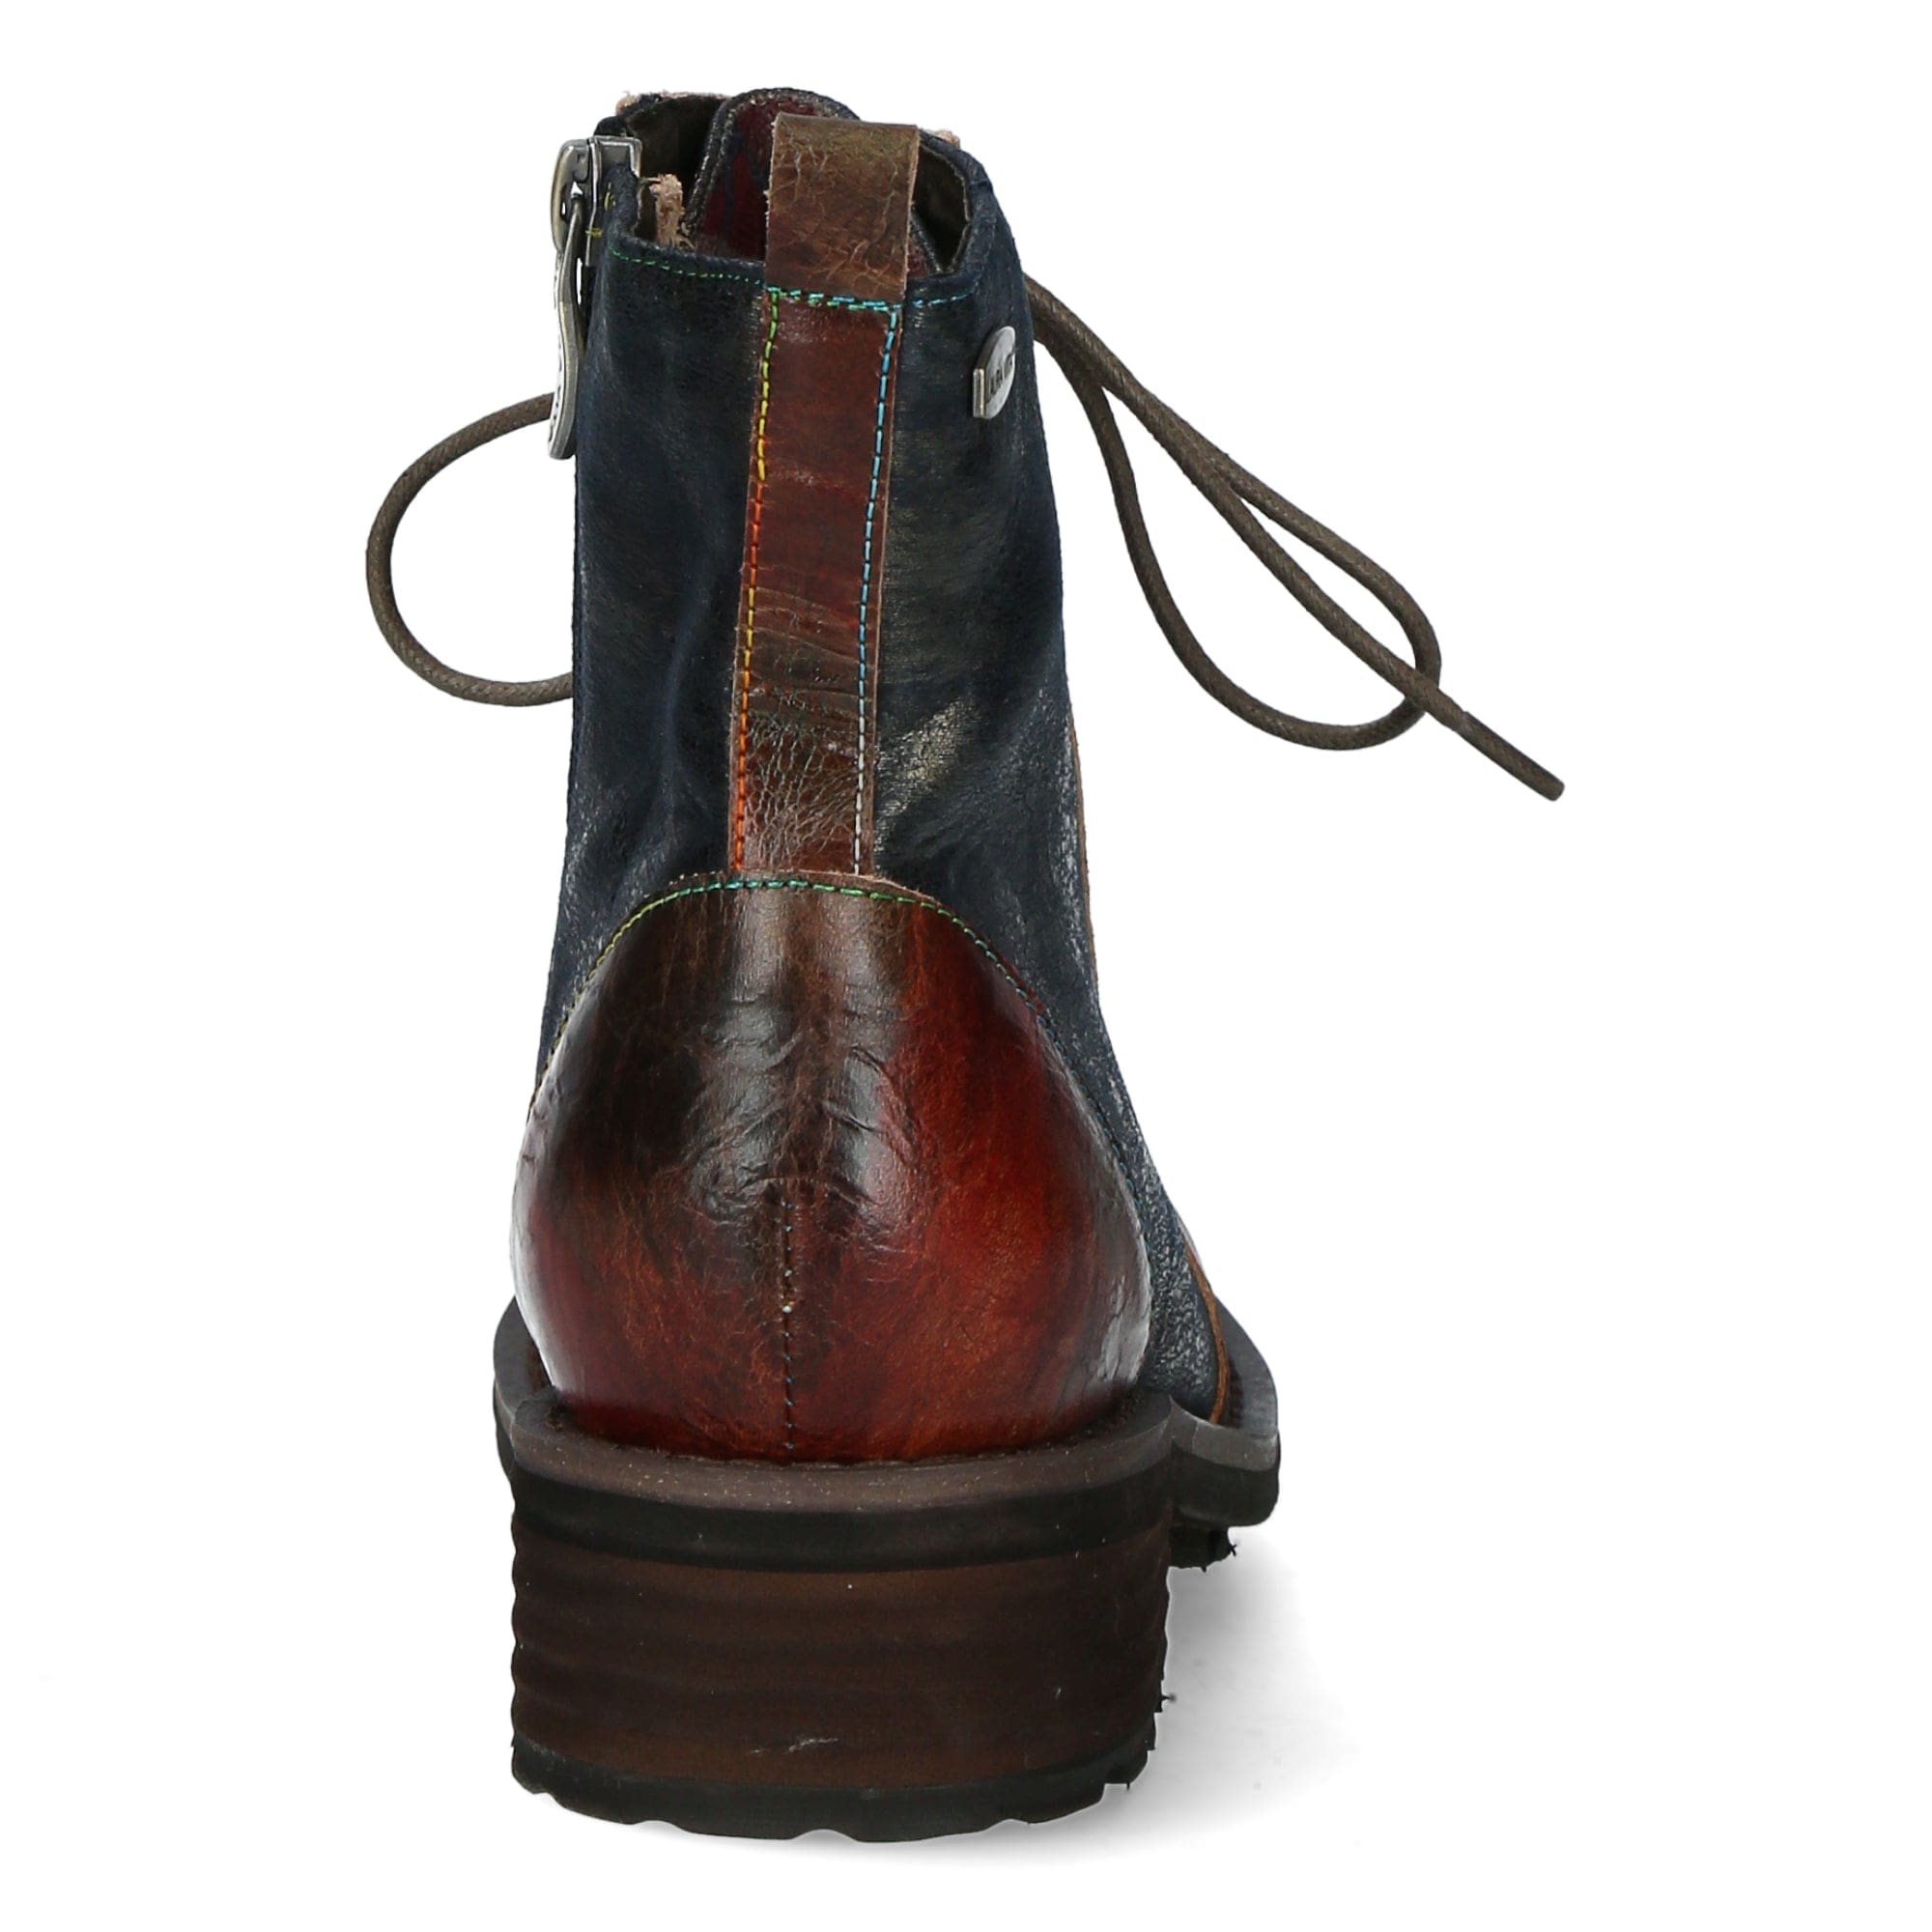 Shoe KELISO 02 - Boots